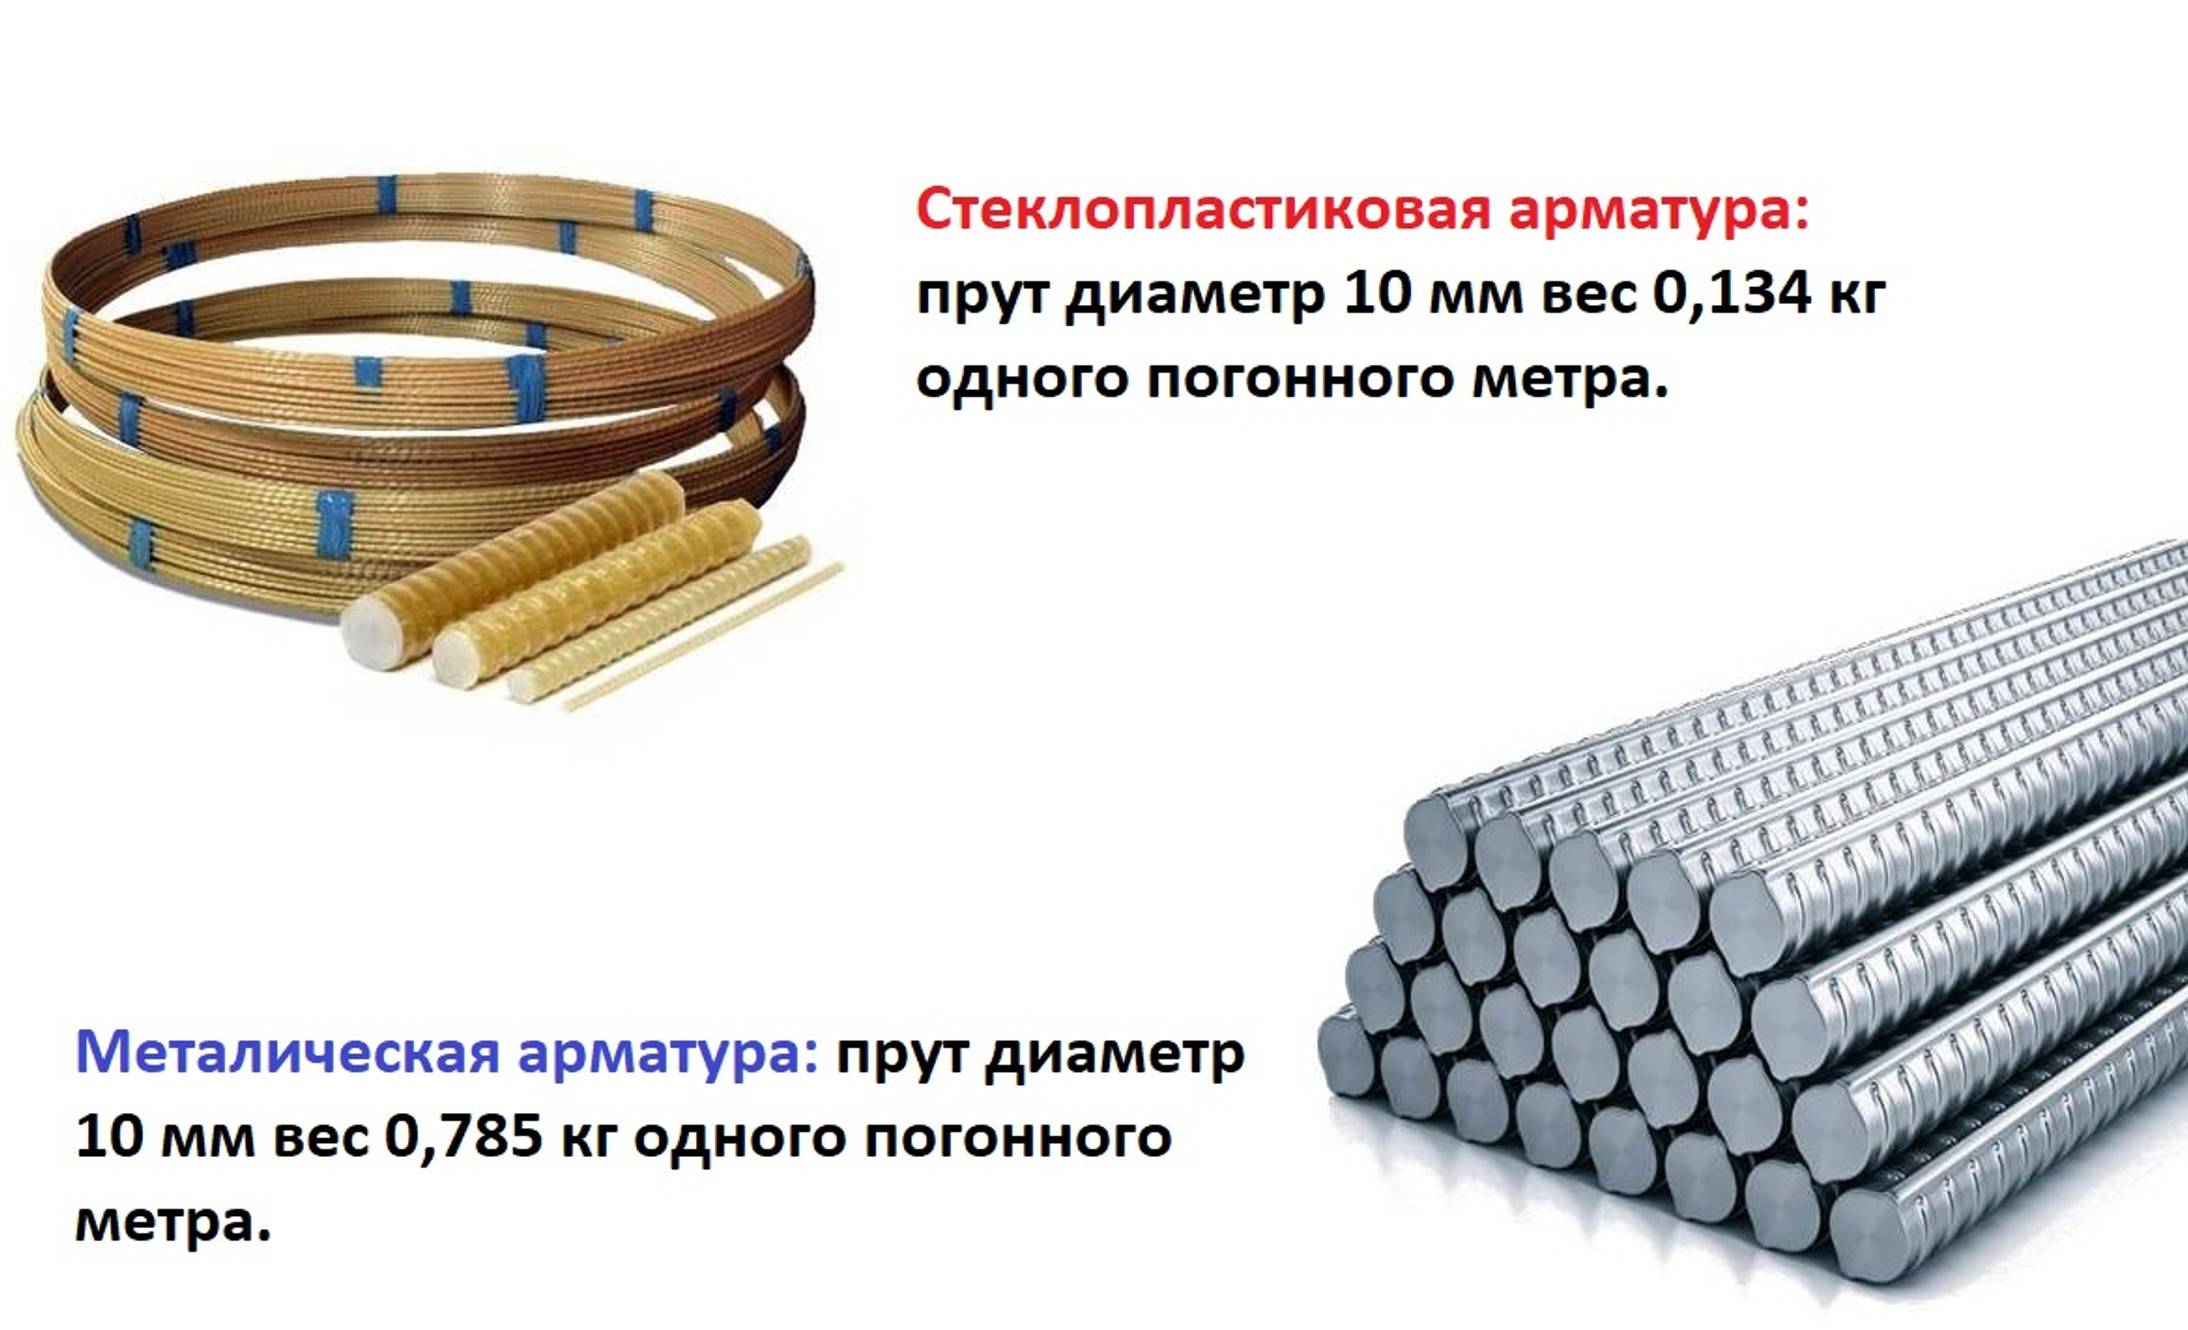 Арматура для фундамента из плиты: металлическая, композитная или стеклопластиковая, какой нужен диаметр и шаг, как сделать расчет расхода материала